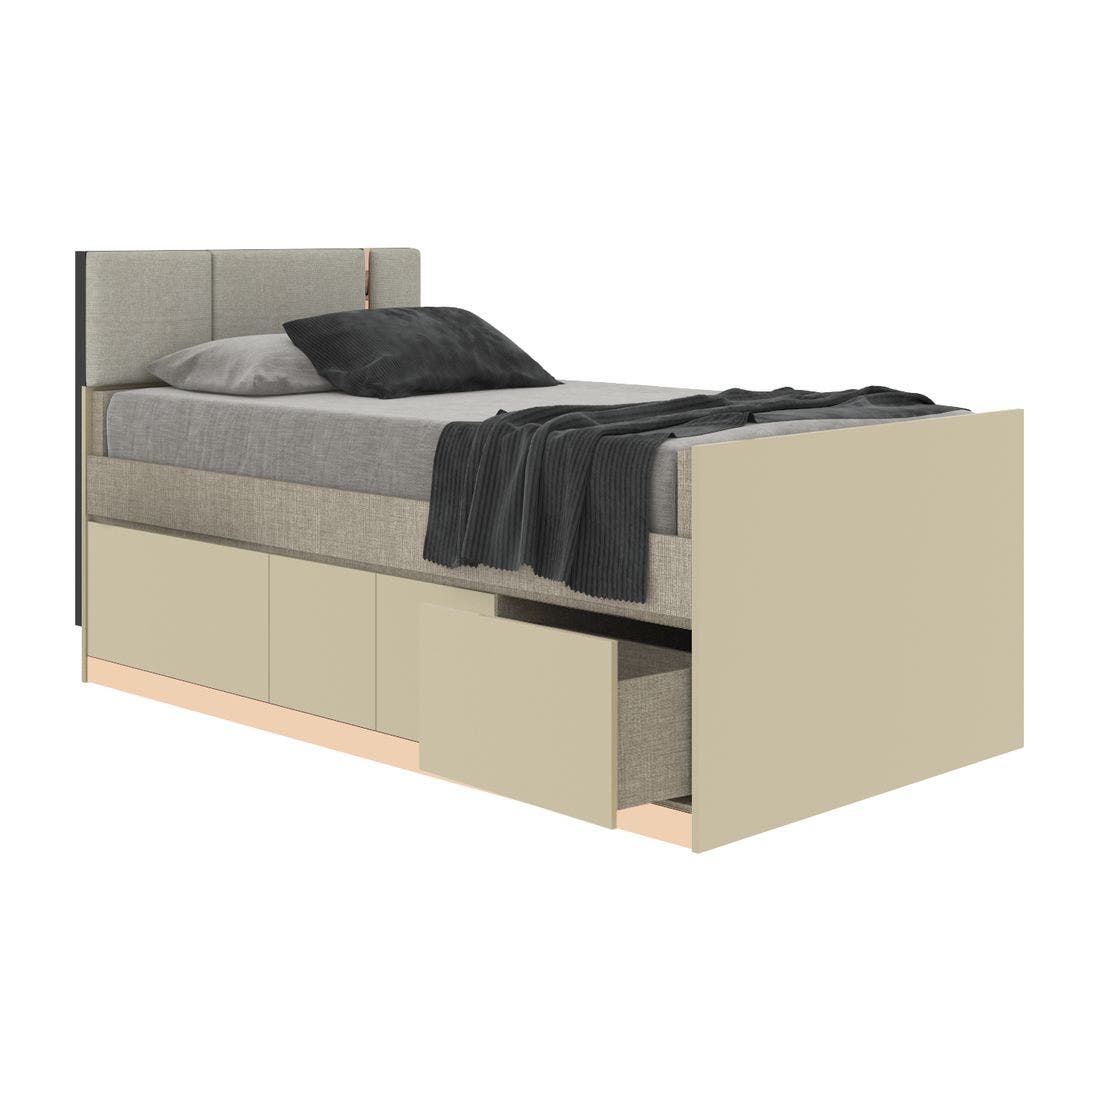 19203932-blisz-furniture-bedroom-furniture-beds-06